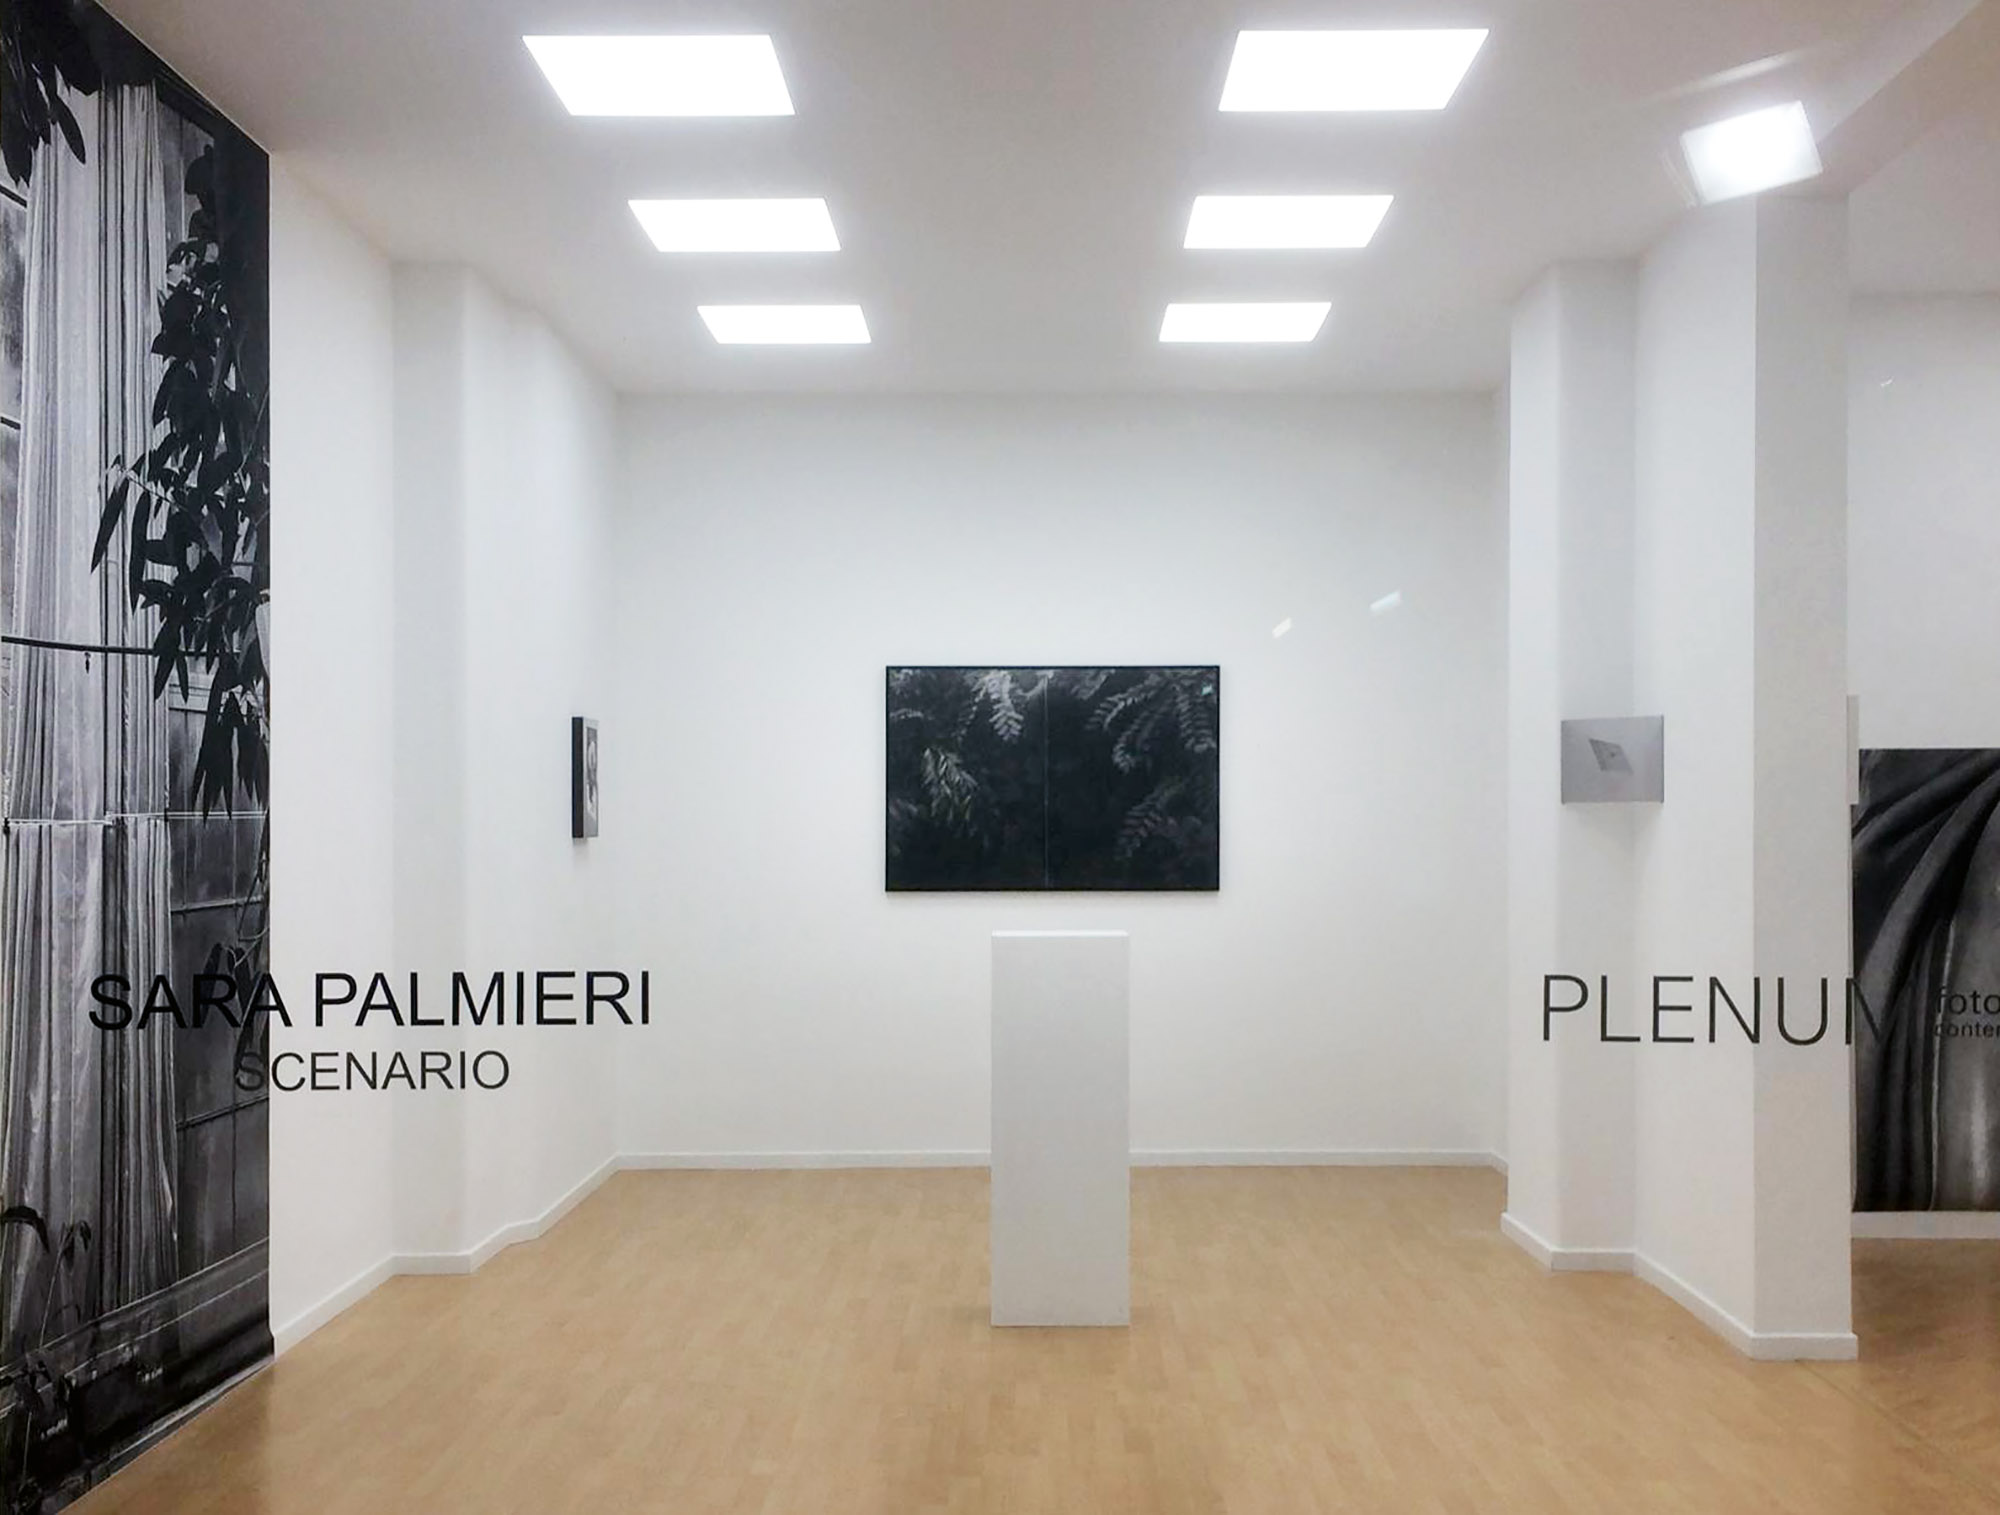  Plenum Gallery Catania 2019 